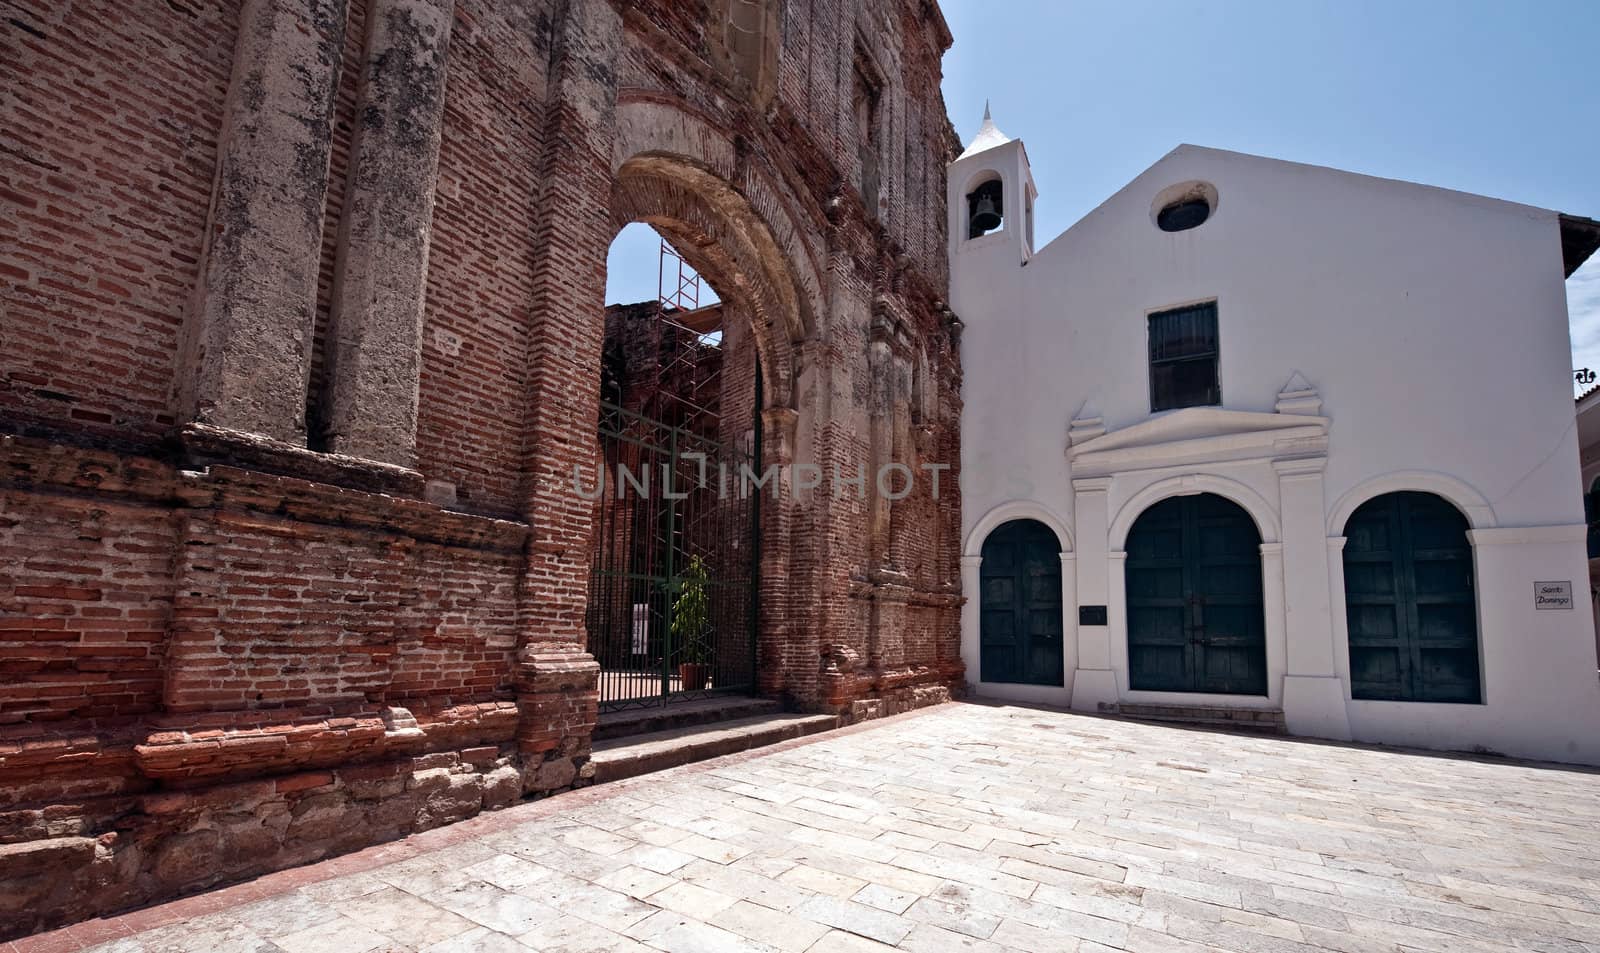 Old church in Casco viejo in Panama city